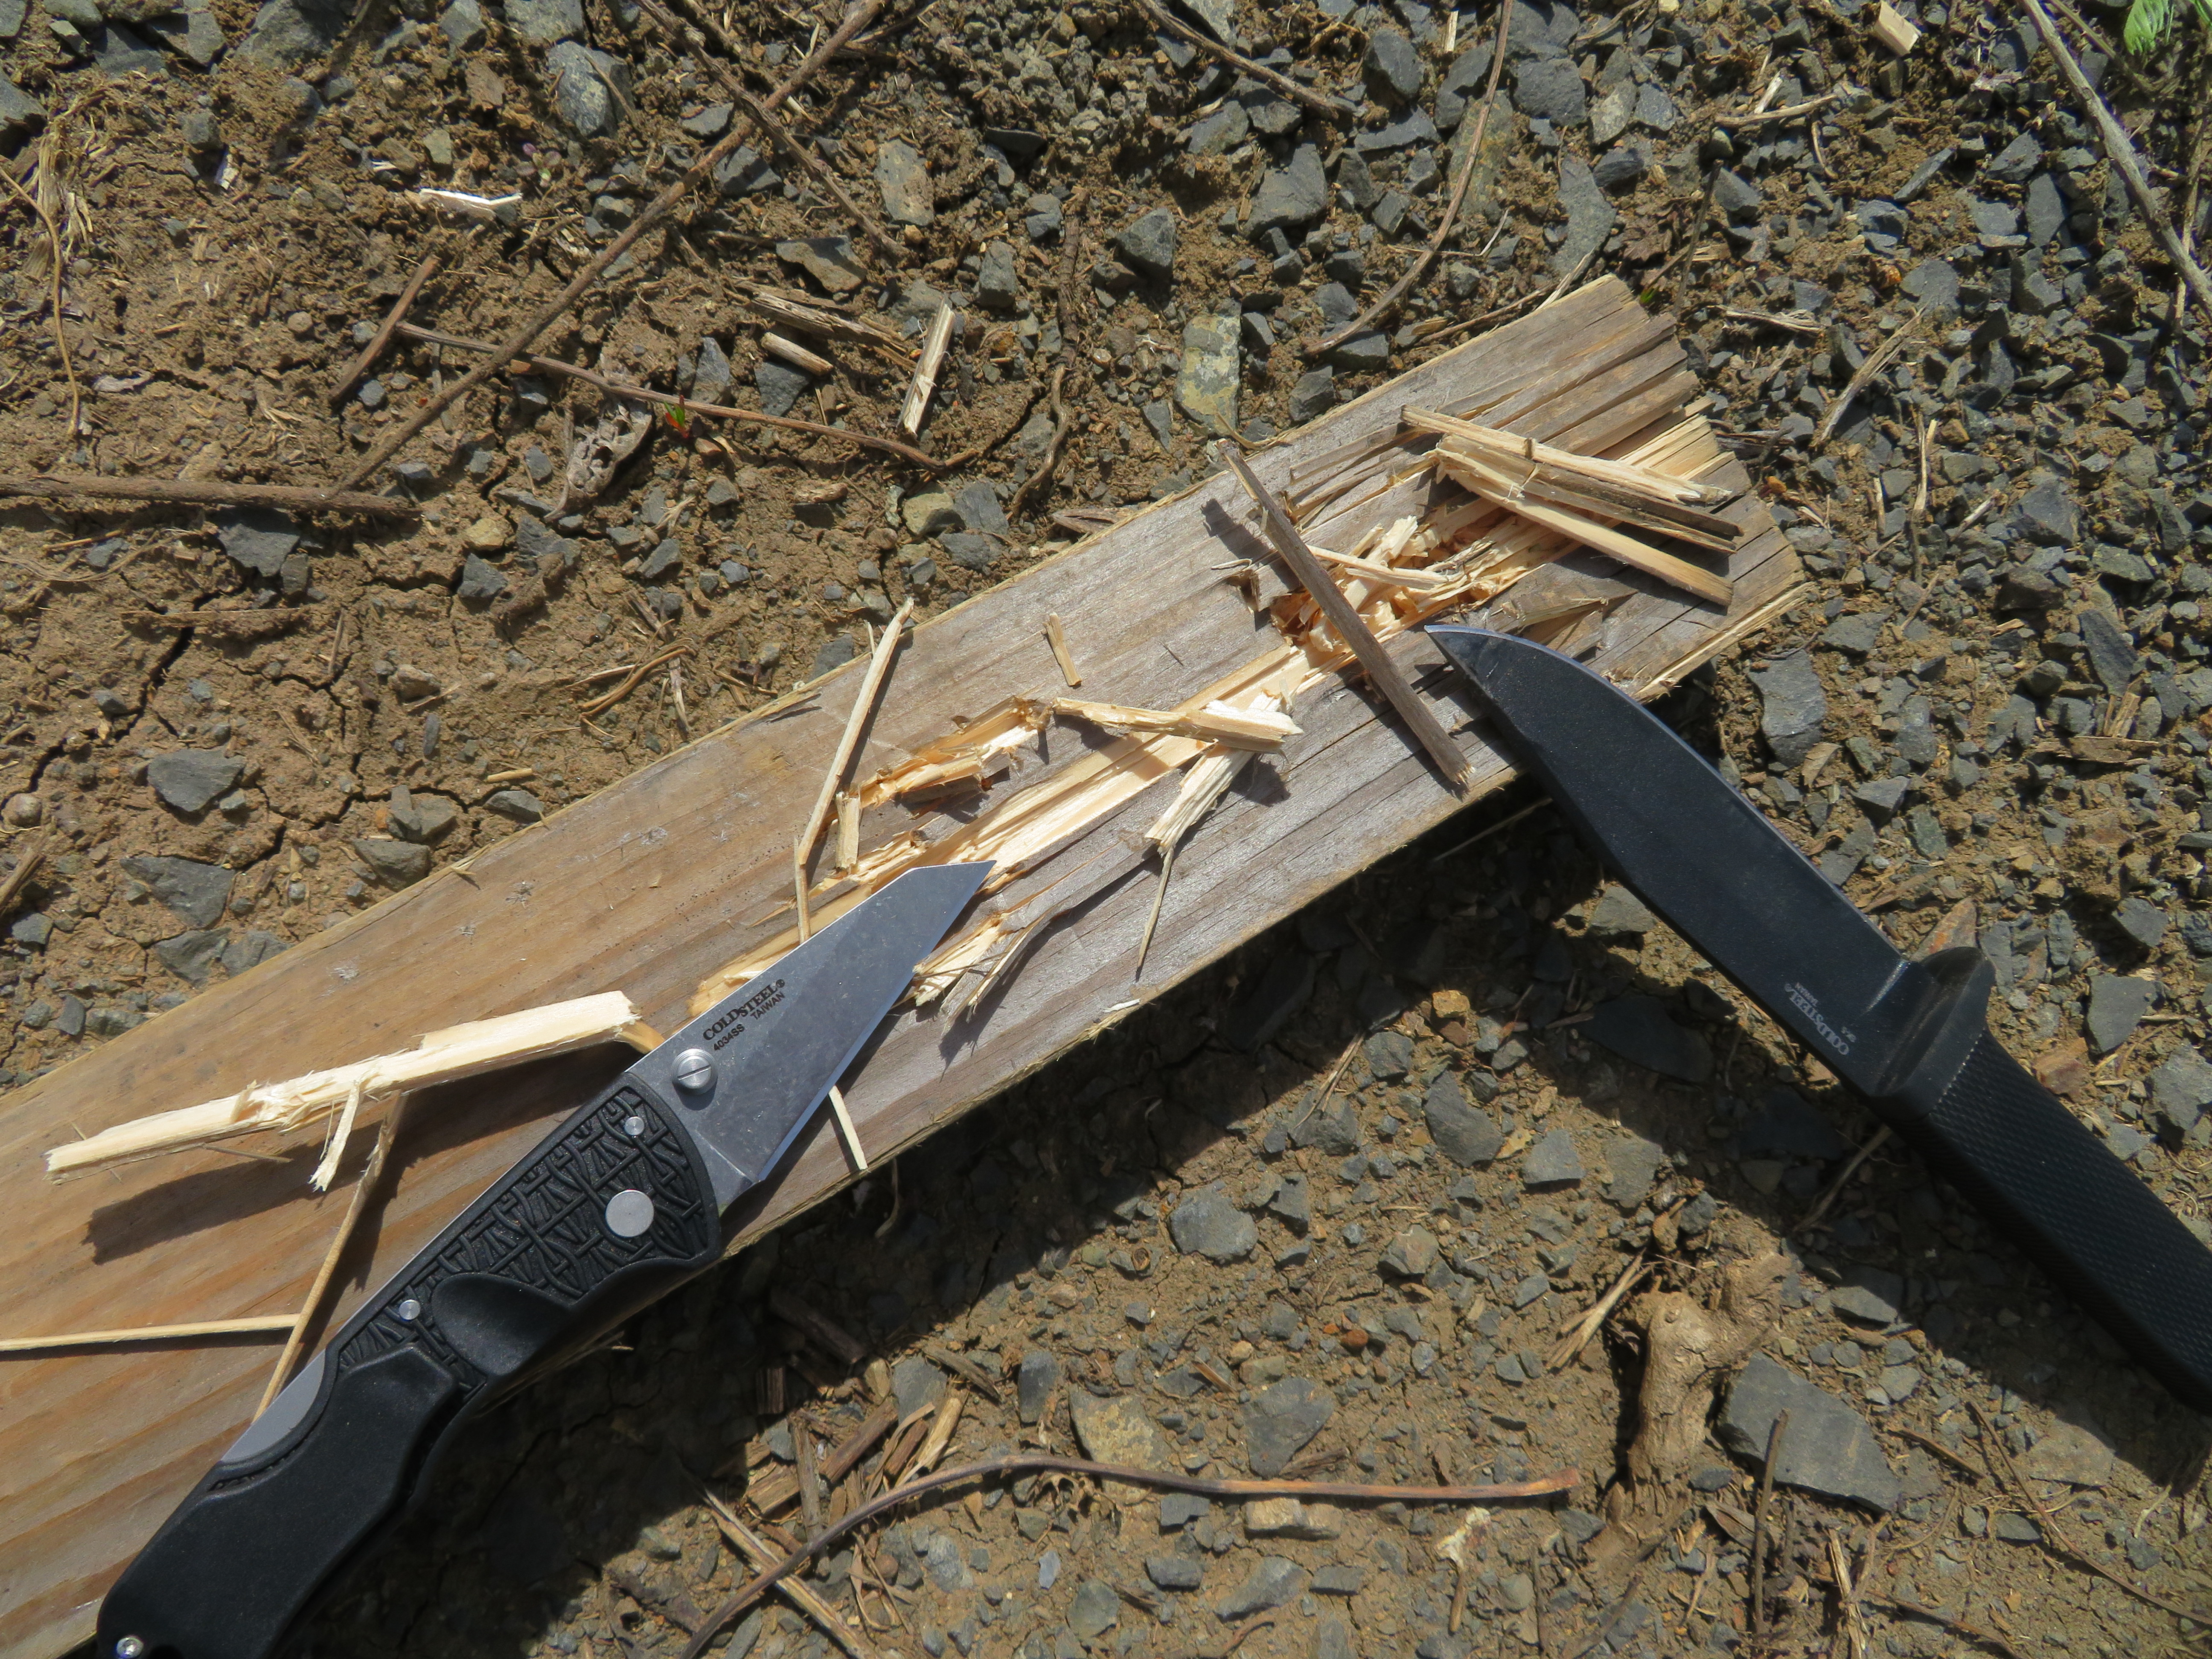 Test hrotu dopadl u obou testovaných modelů od společnosti Cold Steel dobře – ani u jednoho z nožů nedošlo ke zlomení ani ohnutí hrotu.